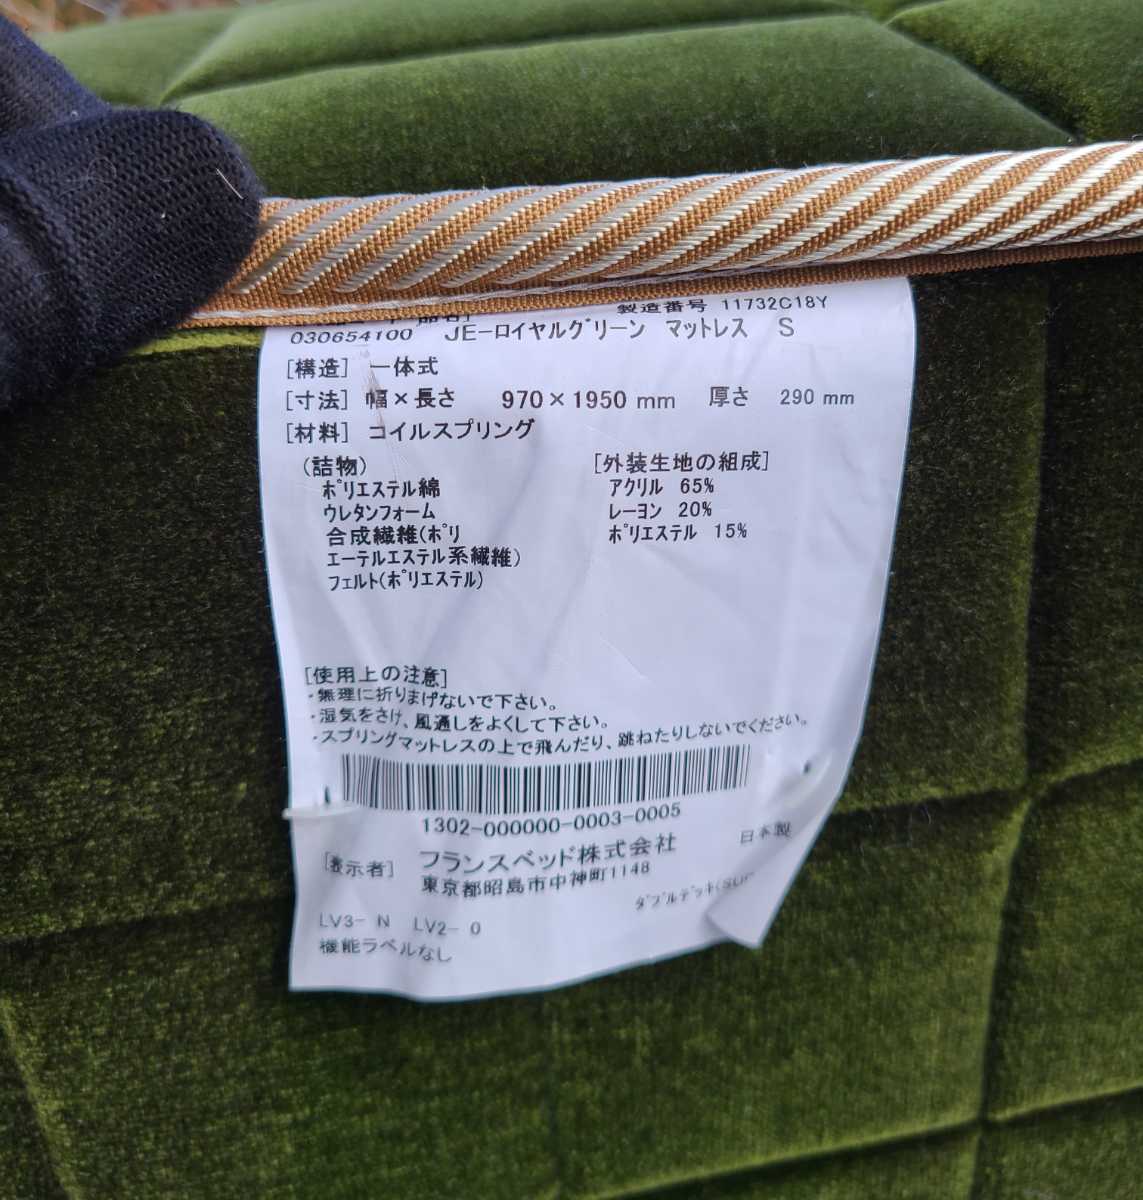  прекрасный товар * France Bed TRAIN SUITE 4 сезон остров модель JE-01 натуральное дерево производства чистота полки имеется обычная цена 44 десять тысяч иен высококлассный роскошный . шт. ряд машина specification Royal зеленый 